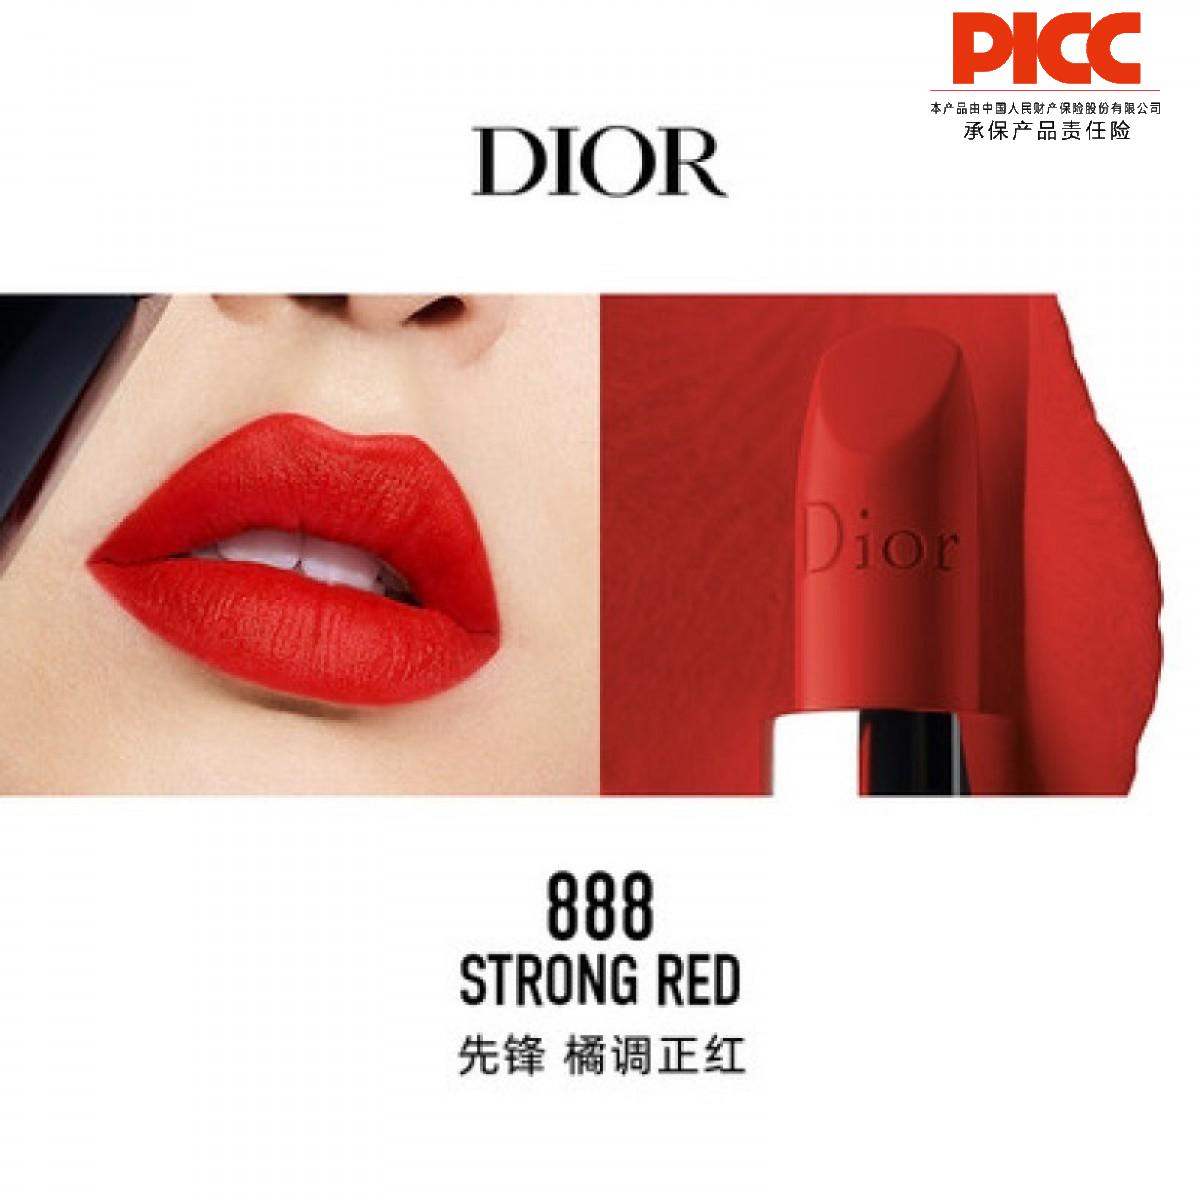 【國內現貨】【中文標】法國迪奧Dior口紅唇膏烈艷藍金3.5g(888#啞光)